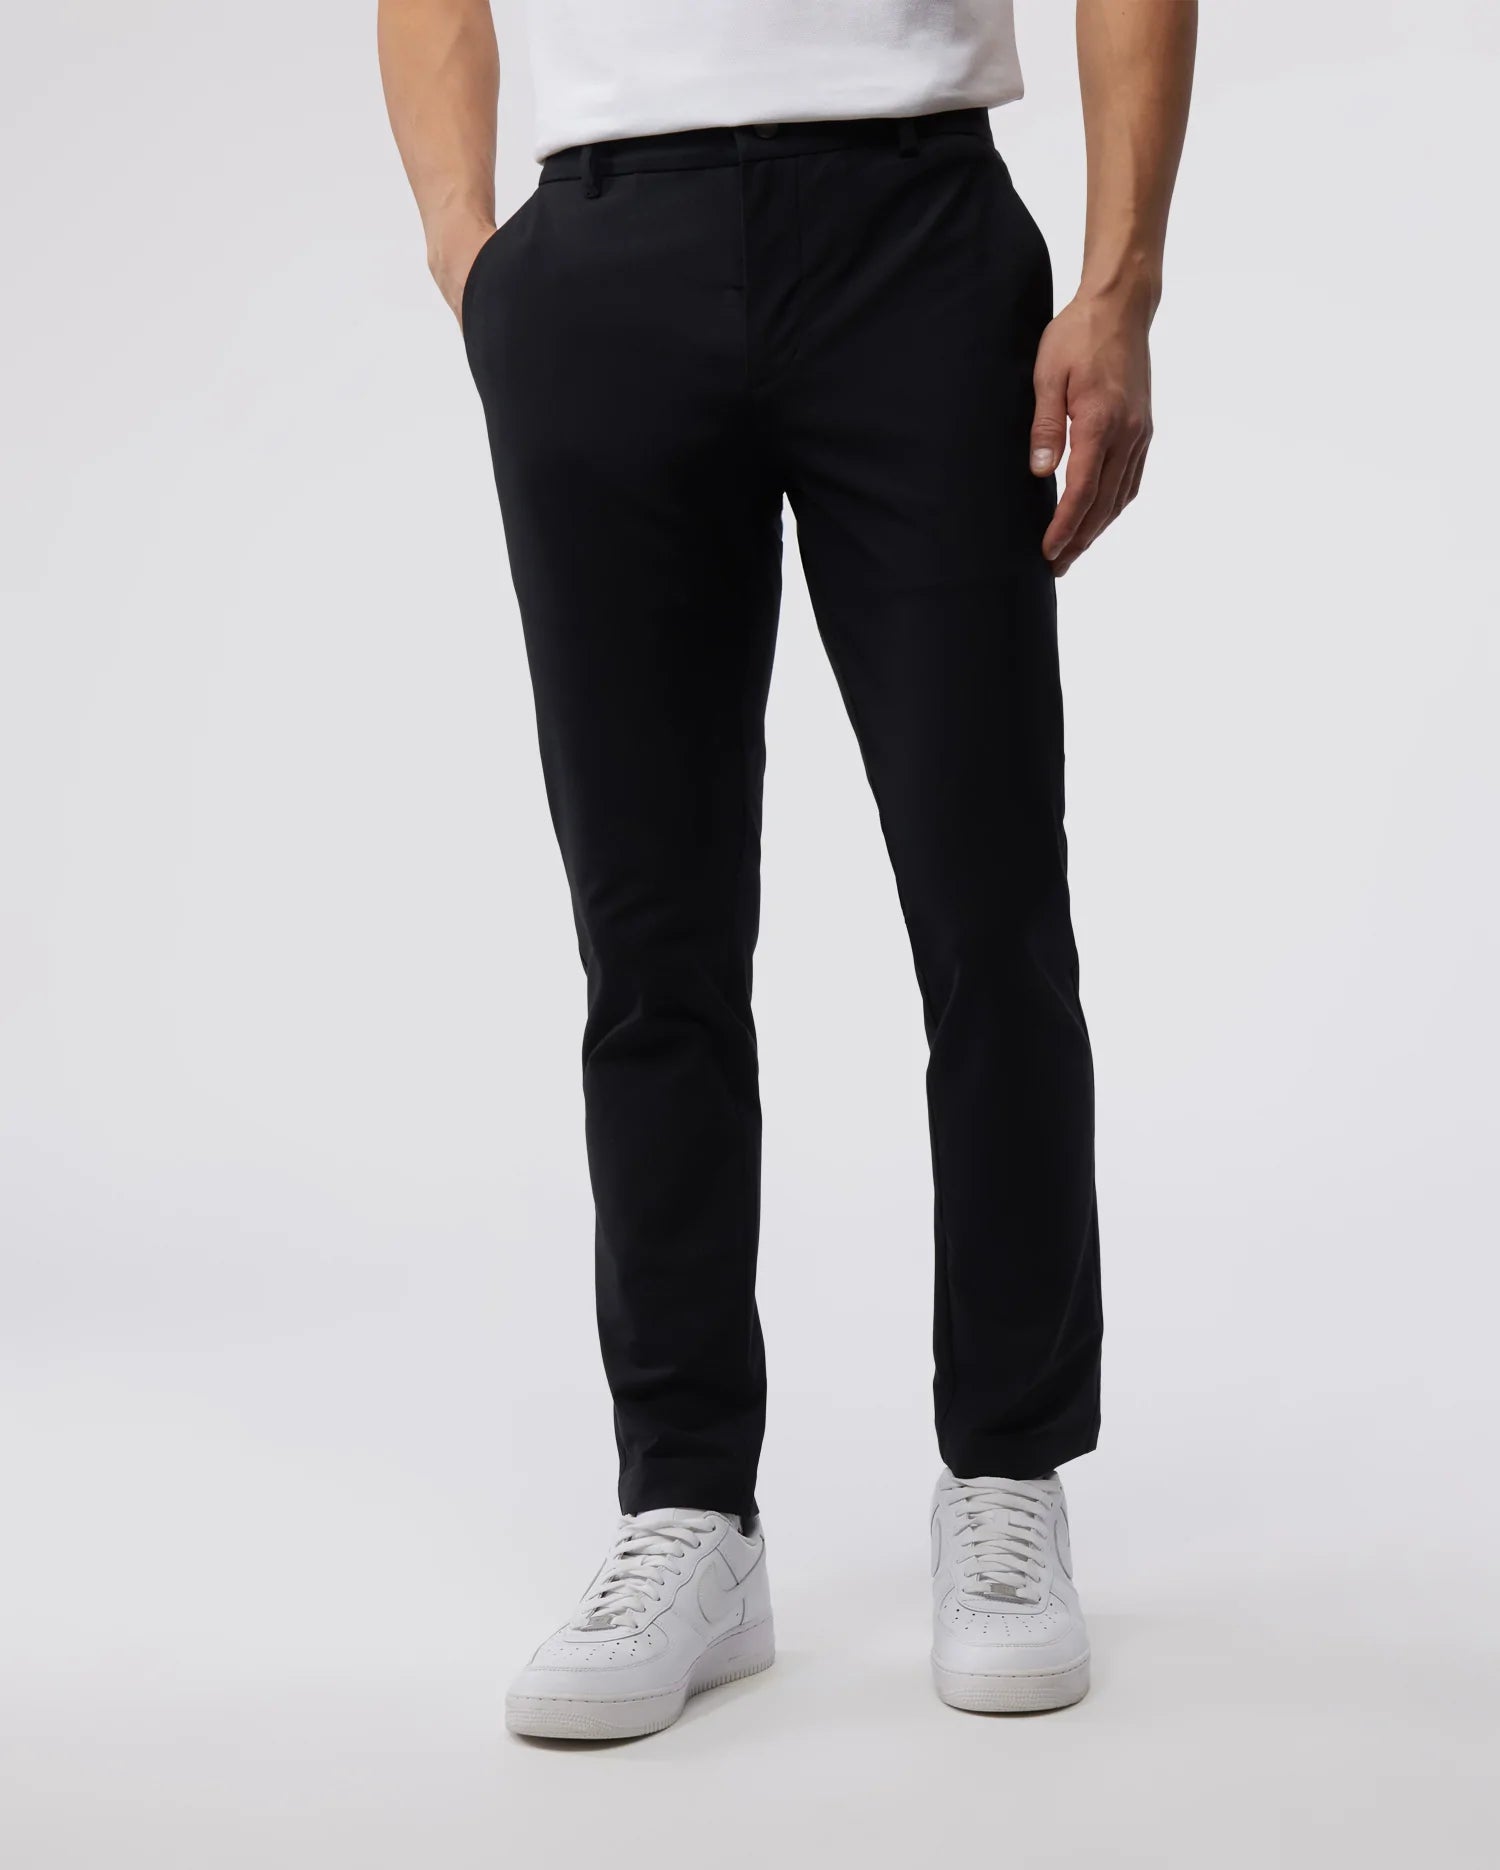 Kids´ sports trousers, black | jozanek.com